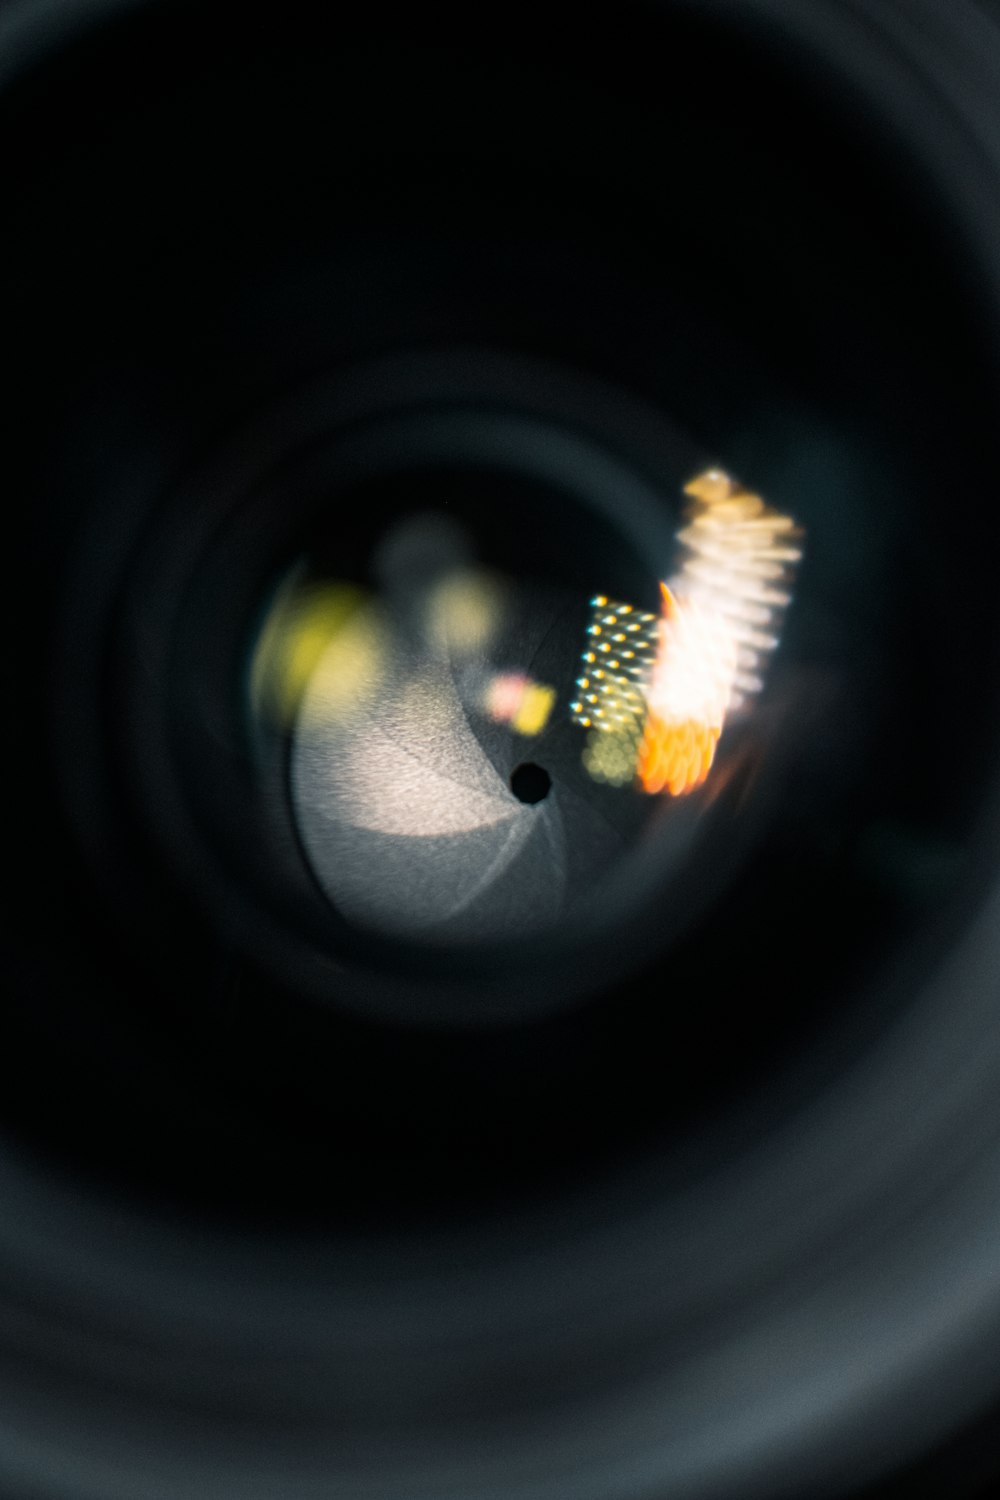 uma visão de perto de uma lente de câmera